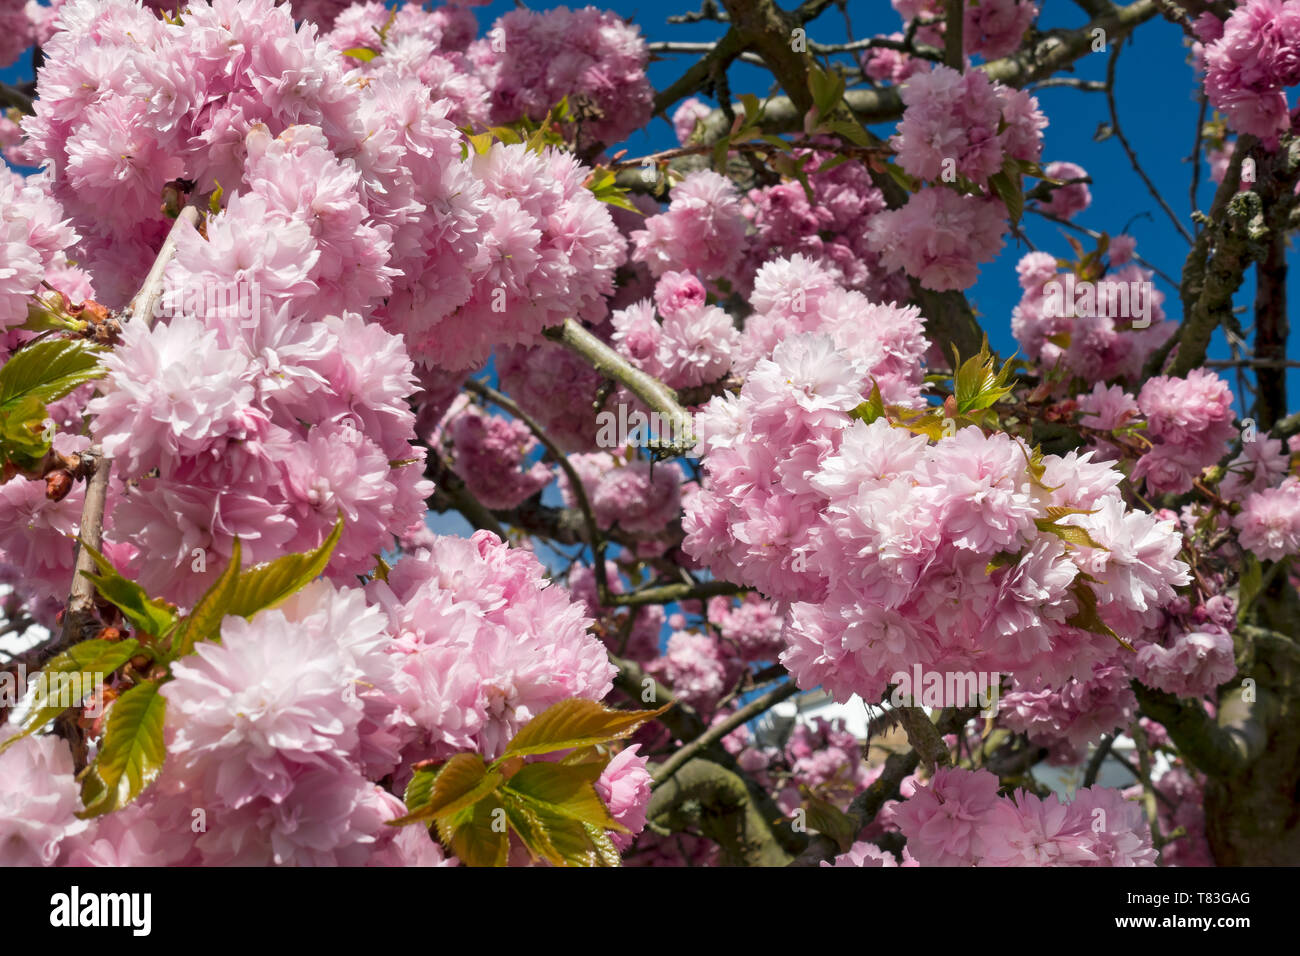 Gros plan de cerisier rose fleur fleurs fleurs fleurs ornementales au printemps Angleterre Royaume-Uni Grande-Bretagne Banque D'Images